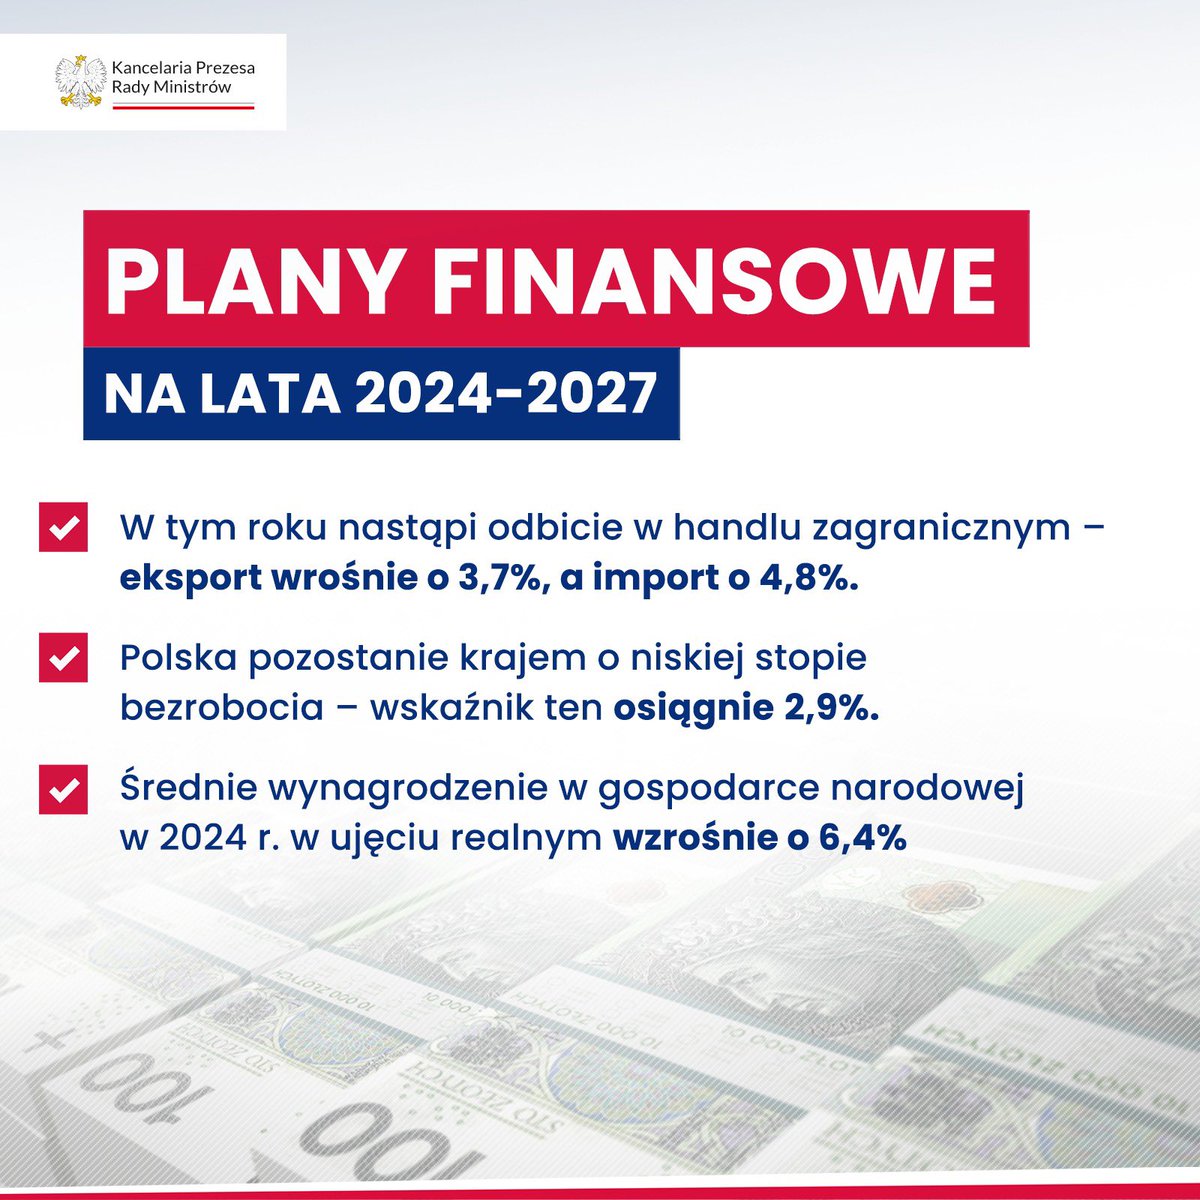 📑 Założenia planu finansowego 2024-2027 ⤵️ ✅ wzrost eksportu o 3,7%, ✅ wzrost importu 4,8%, ✅ wzrost średniego wynagrodzenia w gosp. narodowej o 6,4% ✅ niskie bezrobocie - 2,9%